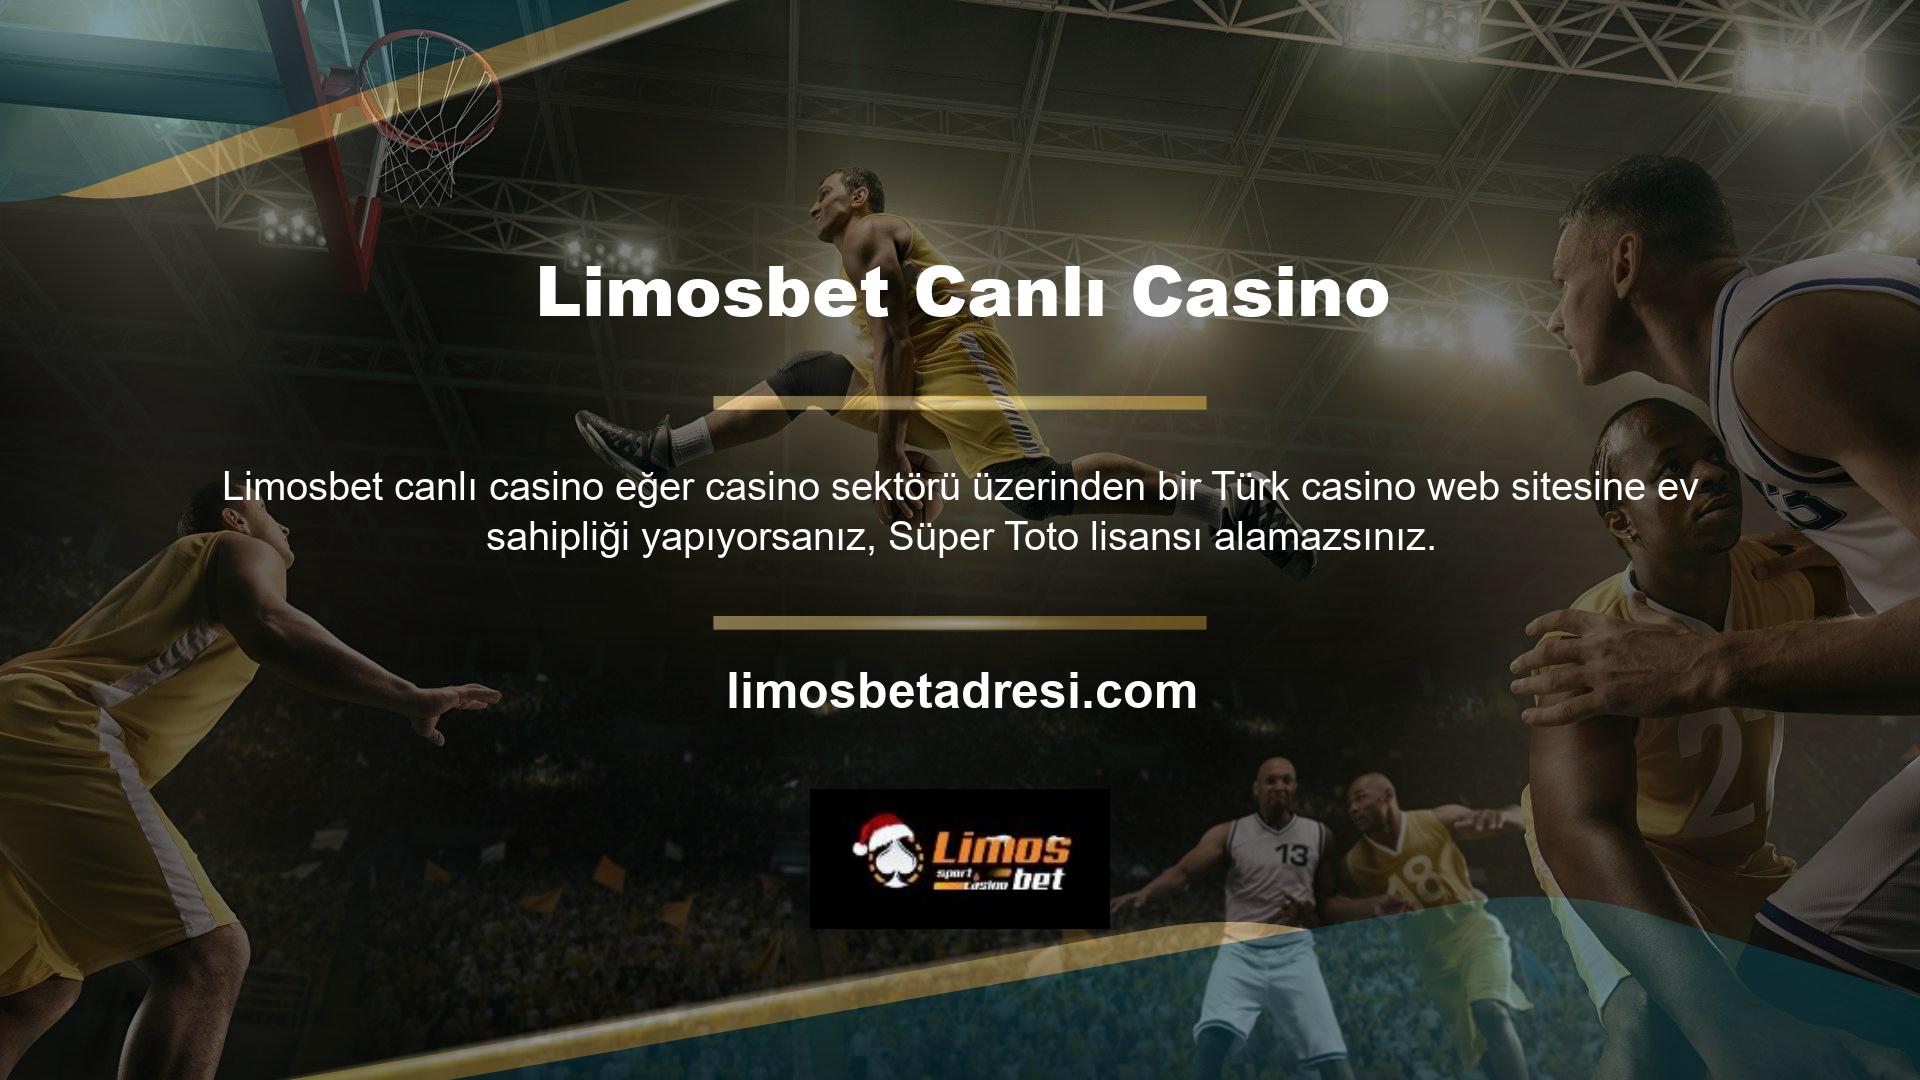 Limosbet Canlı Bahis Sitesi, Avrupa'daki gerçek Limosbet Casino endüstrisi sitelerine sadakat yoluyla uluslararası hizmetler sunmaktadır